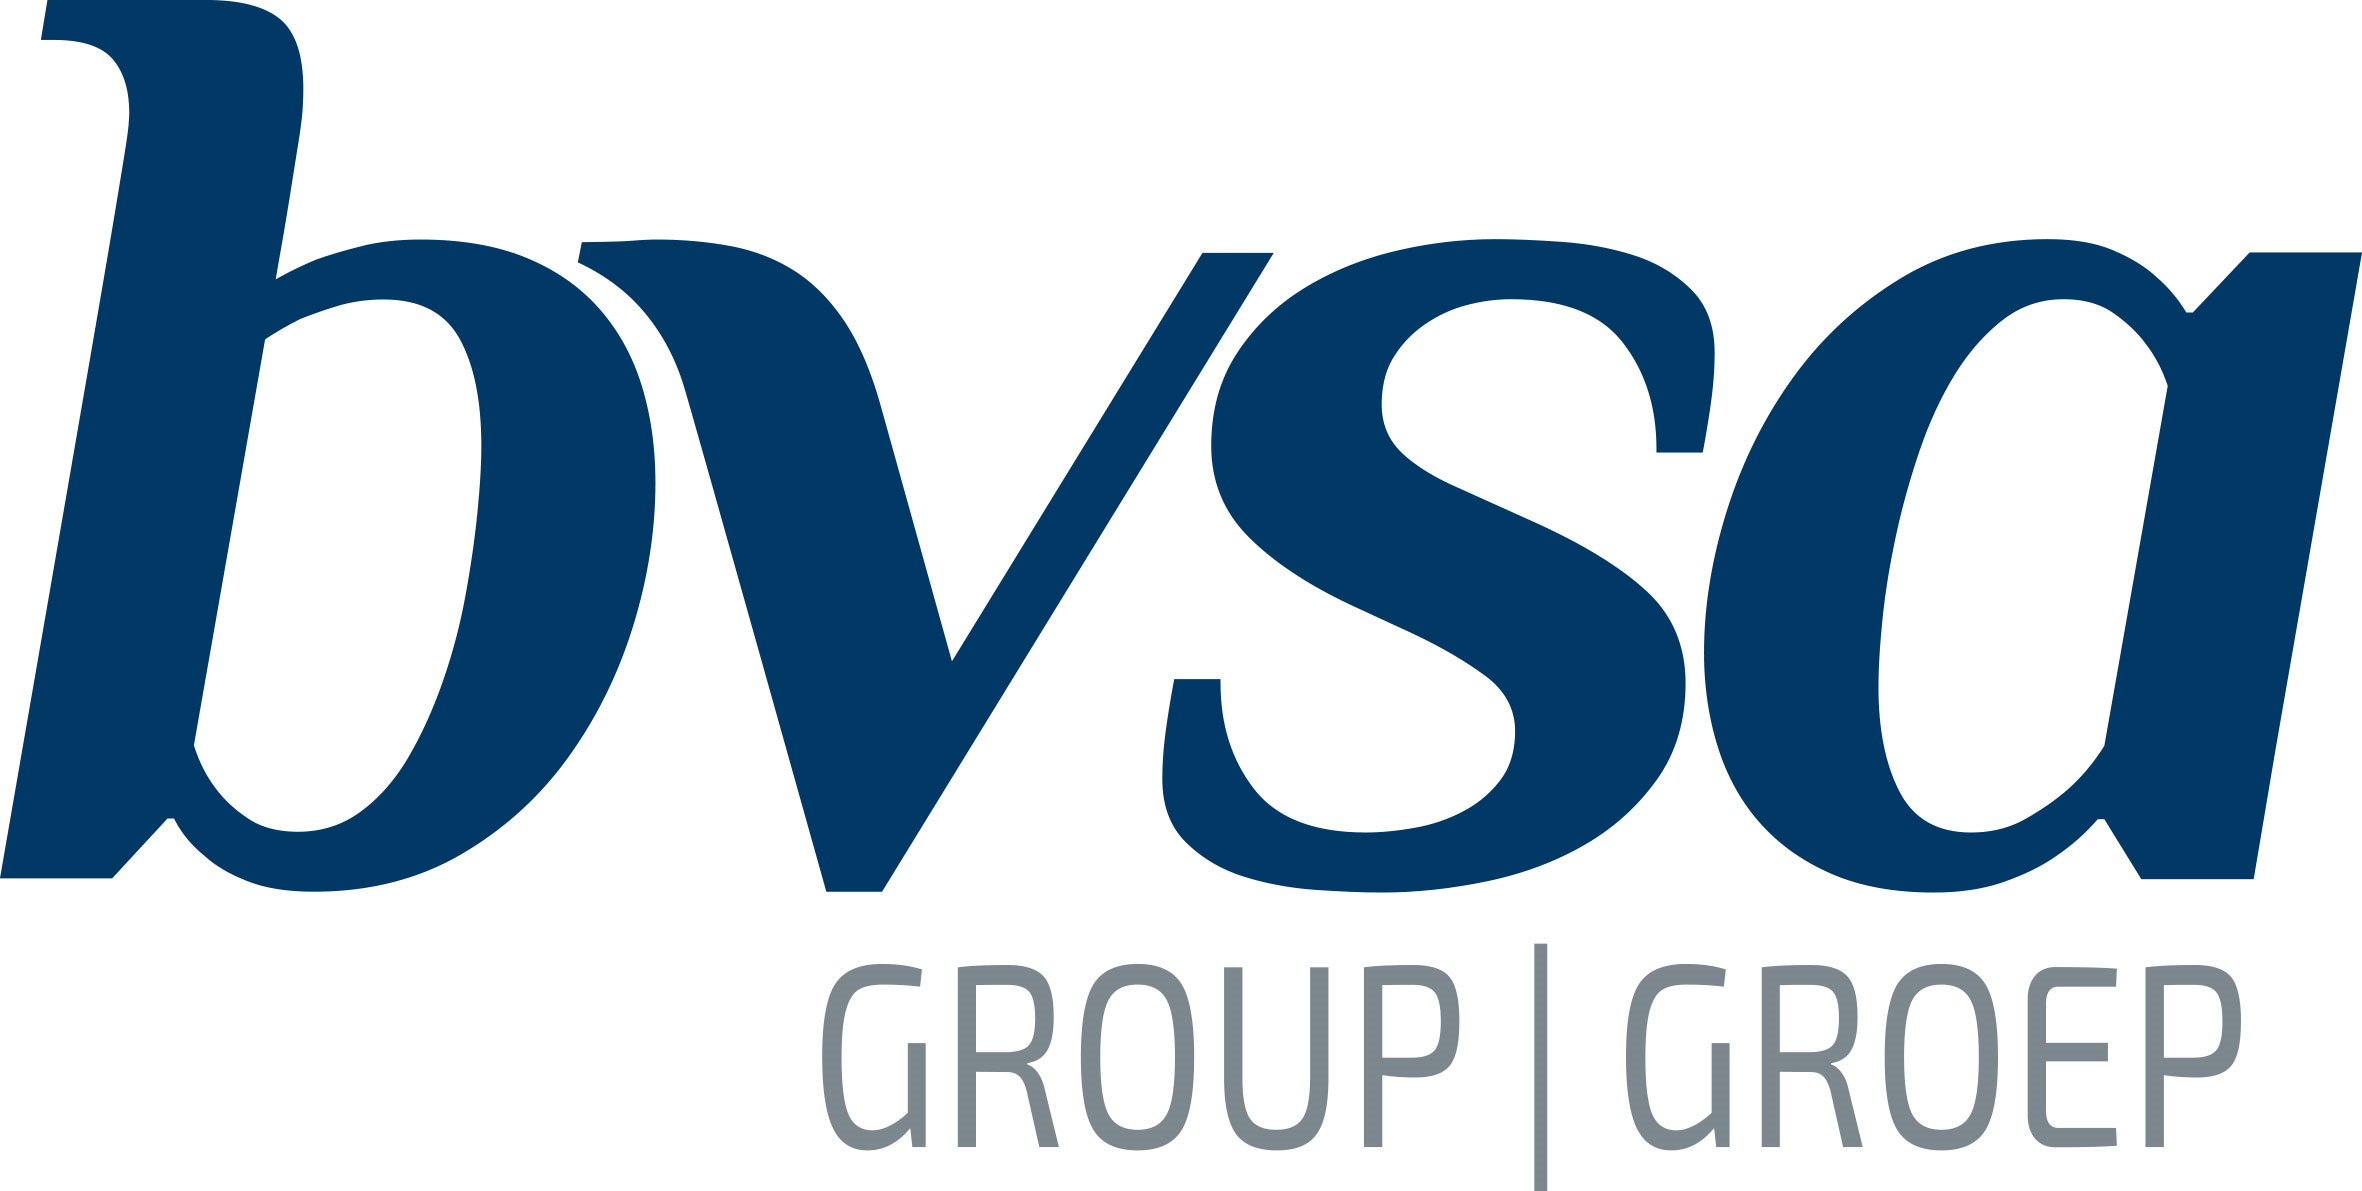 BVSA Communication Group